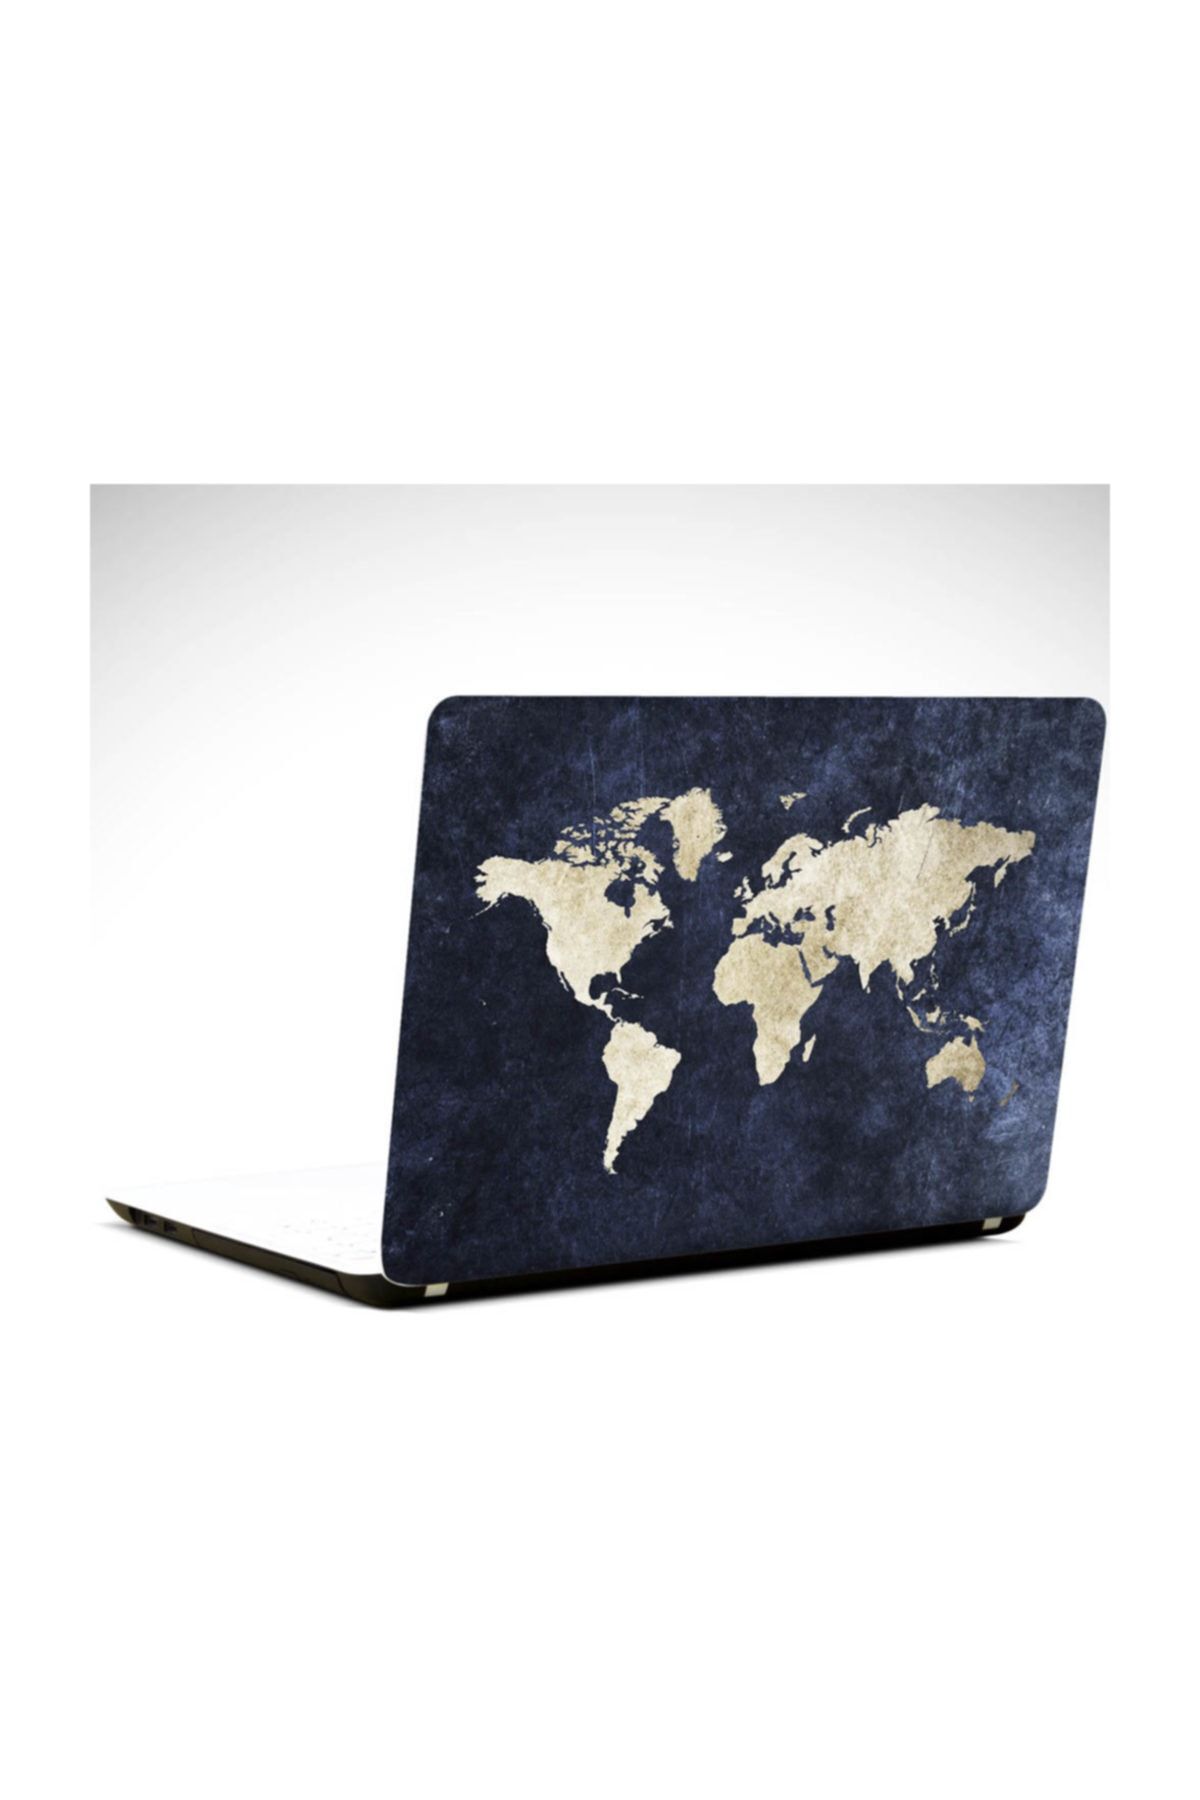 Dekolata Dünya Haritası Laptop Sticker